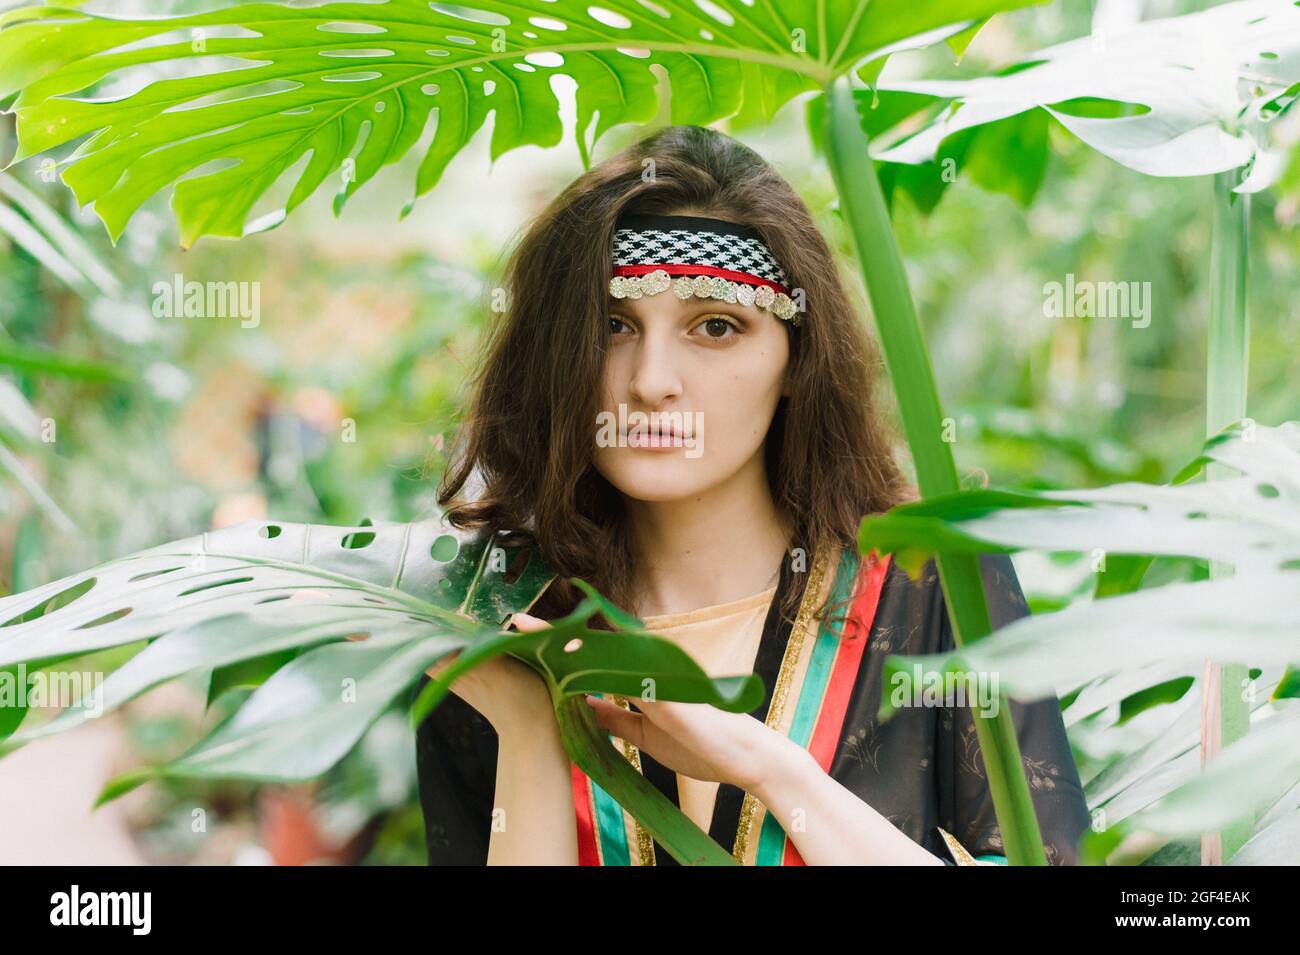 La ragazza dal Giordano sullo sfondo di piante e foglie di palmo. Ragazza giordana in costume nazionale di uno Stato arabo. Foto Stock